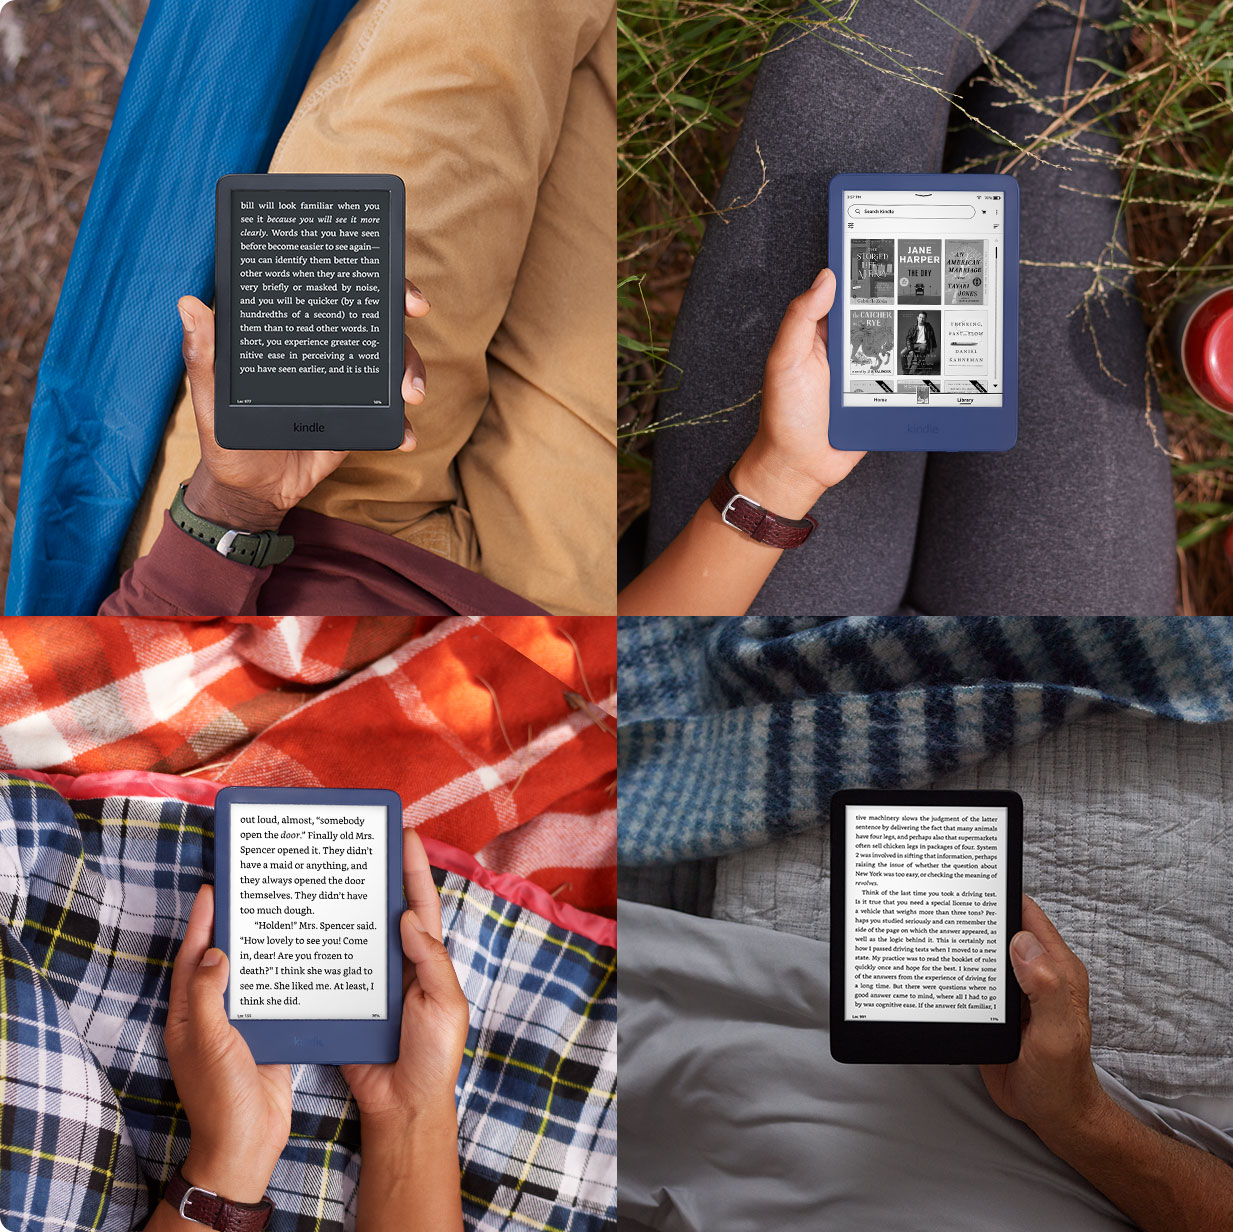   Kindle – El Kindle más ligero y compacto, ahora con una  mayor duración de la batería, luz frontal regulable y 16 GB de  almacenamiento – Negro : Electrónica